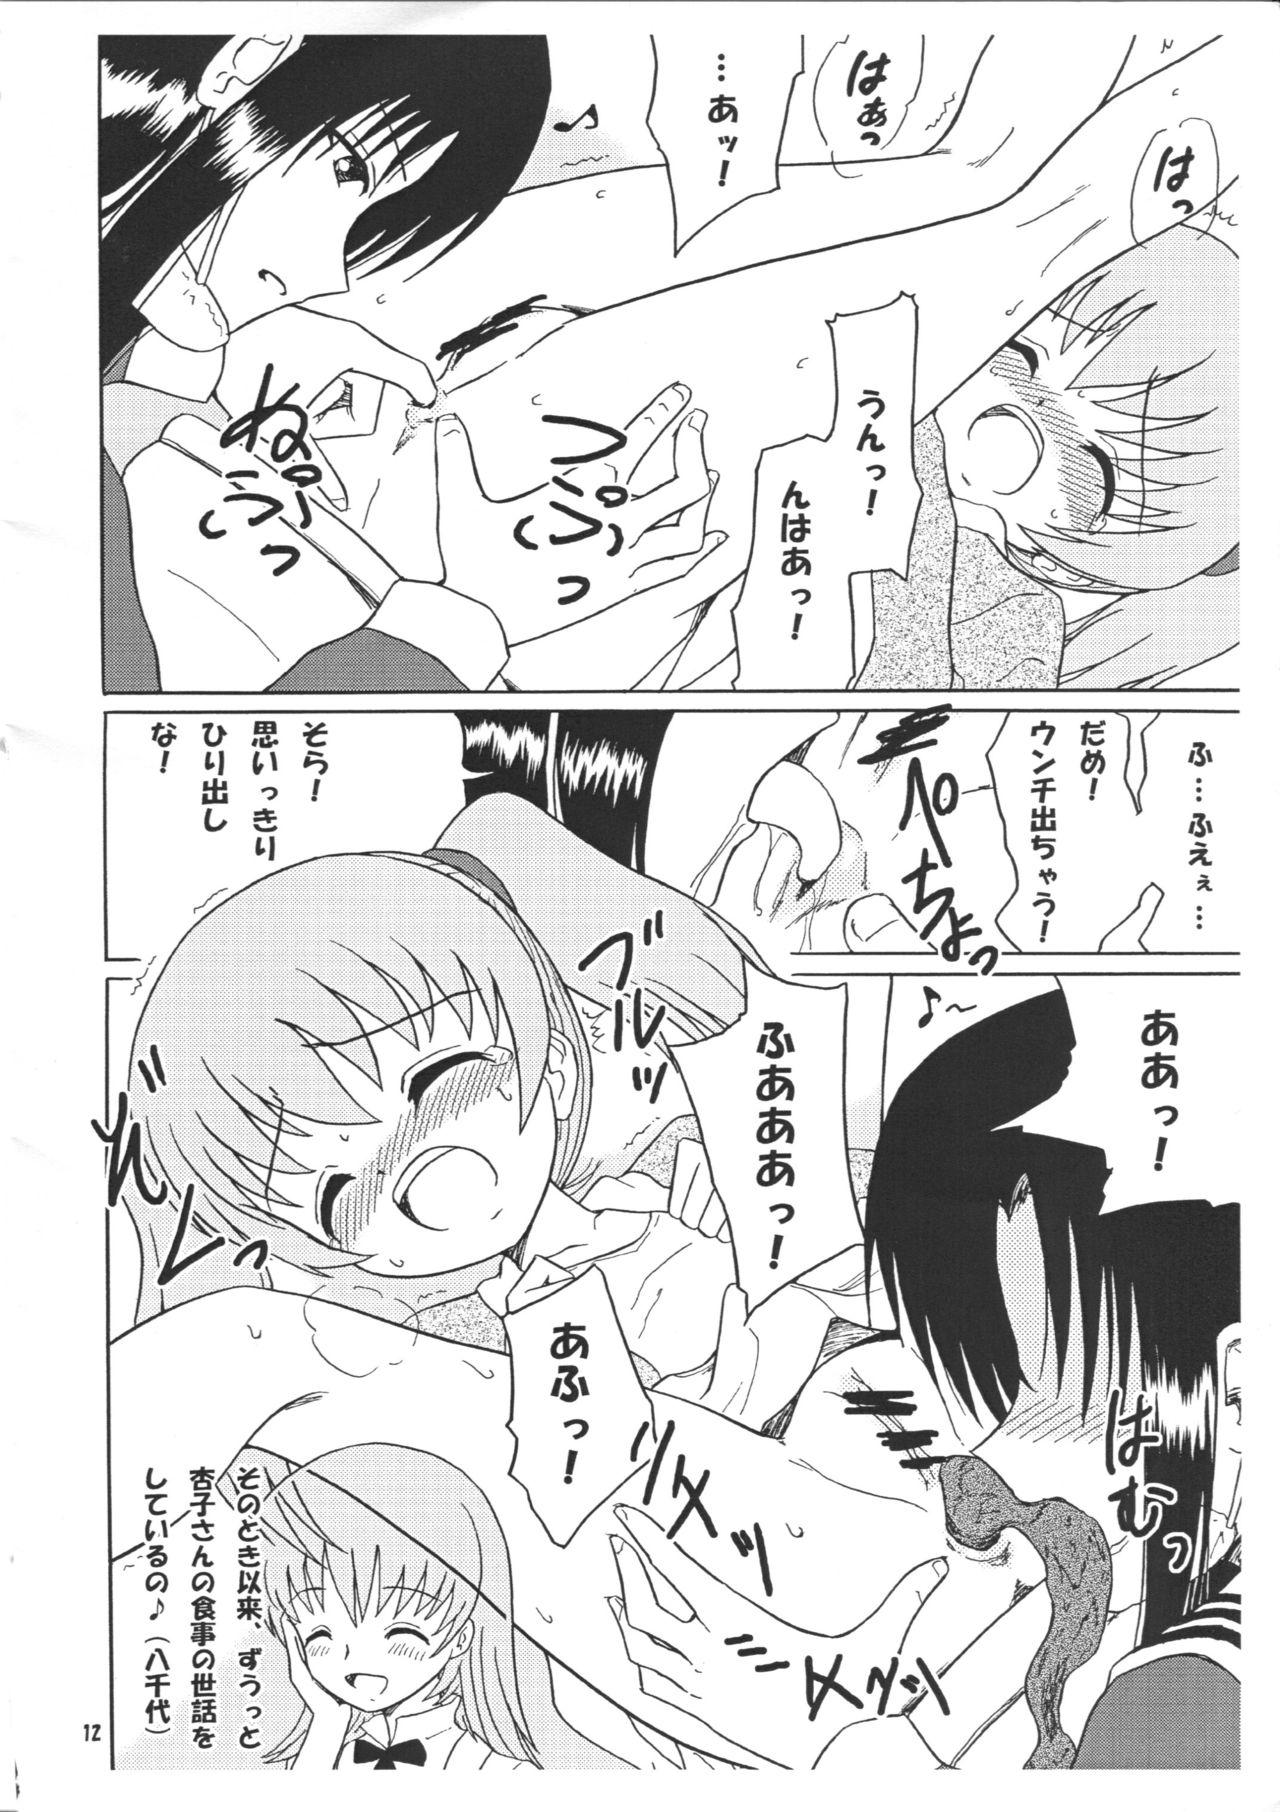 Collar Chirashi no Ura Vol. 3 - Toaru kagaku no railgun Toaru majutsu no index Bangbros - Page 13